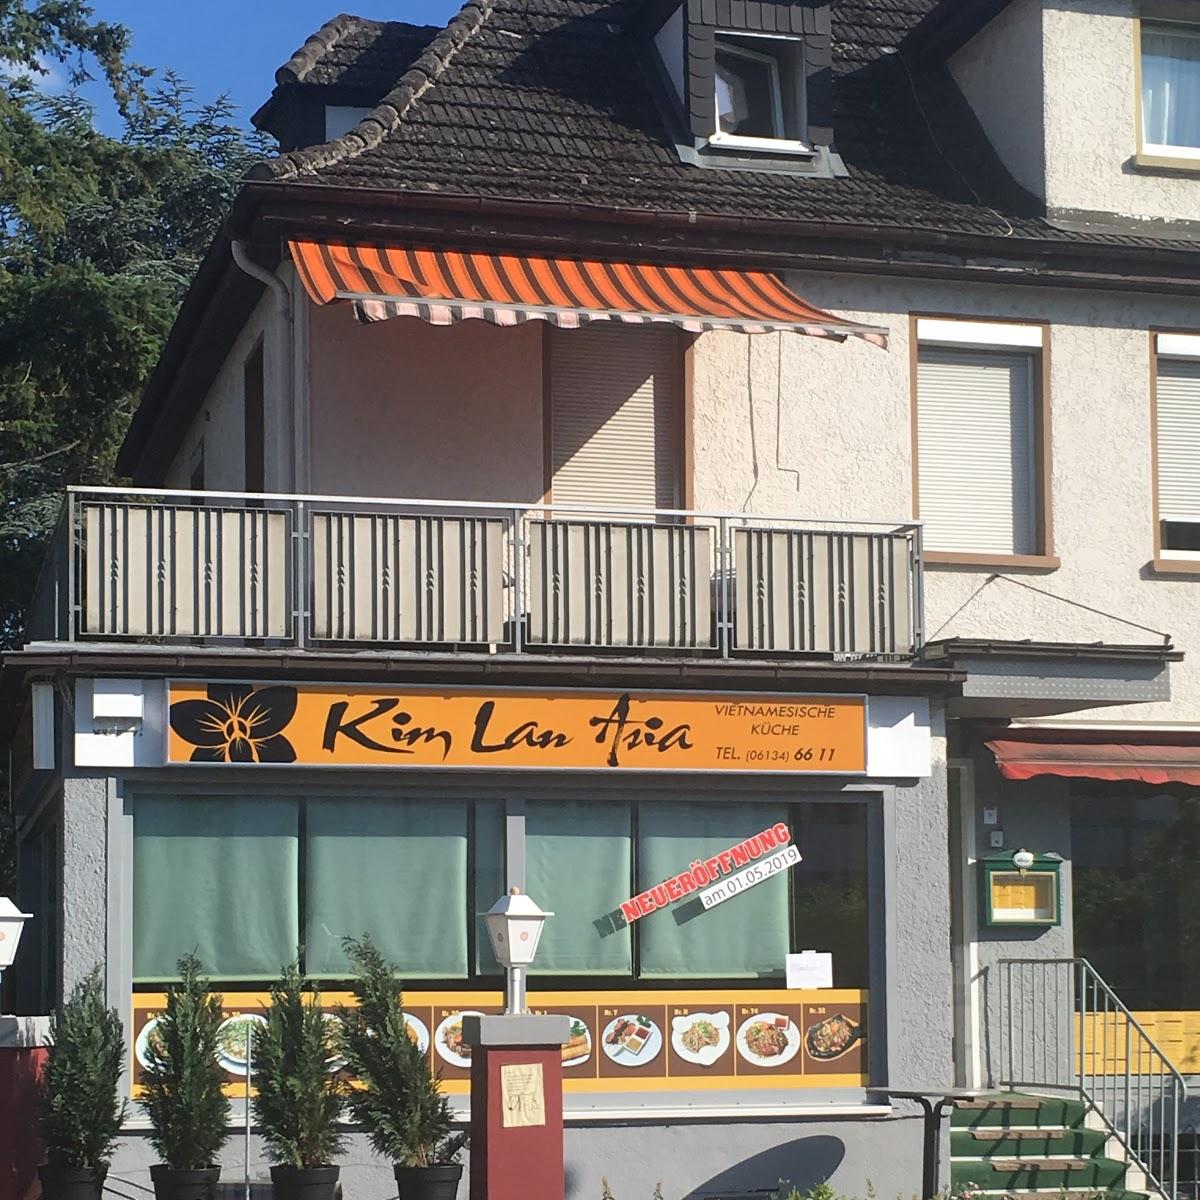 Restaurant "Kim Lan Asia" in Wiesbaden